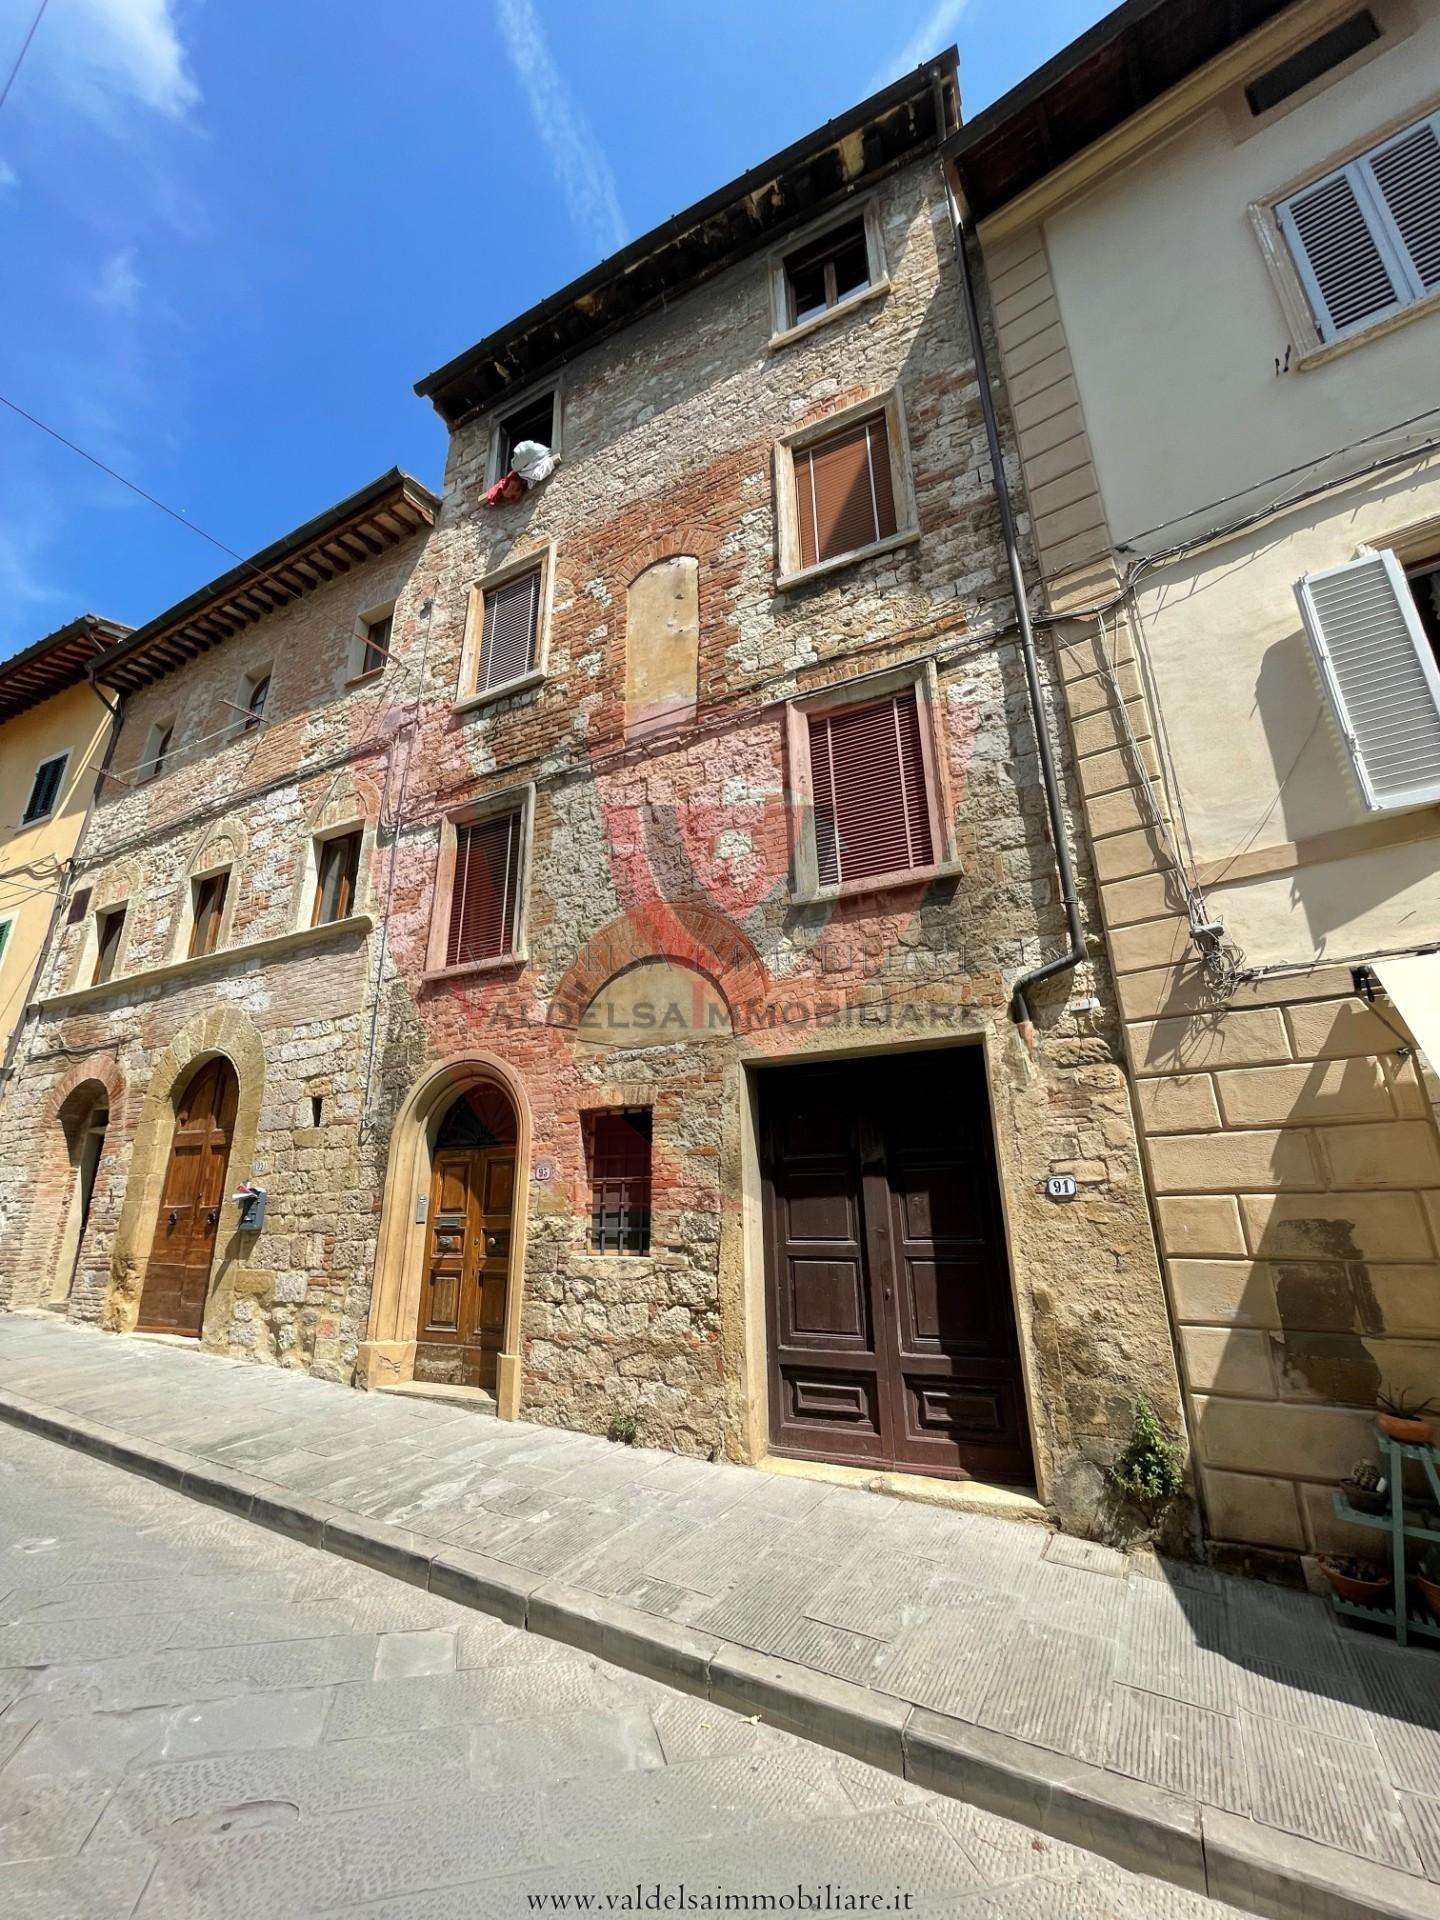 Palazzo - Stabile in Vendita a Colle di Val d'Elsa Via Gracco del Secco, 93